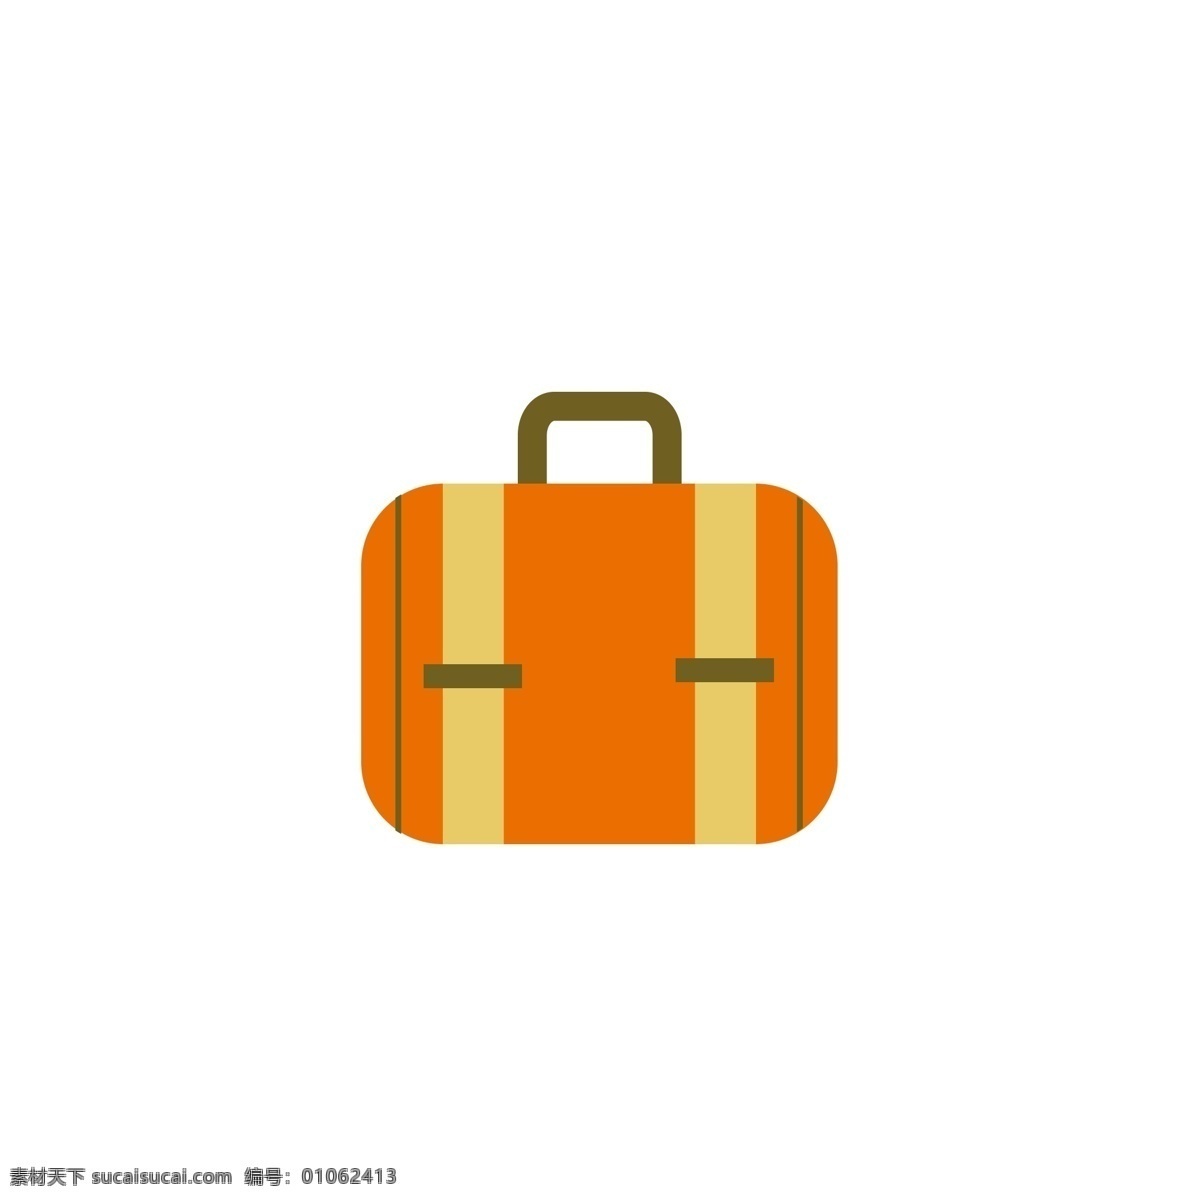 手提袋 黄色 挎包 方便 包 手提包 旅行 方形 桔子 休闲